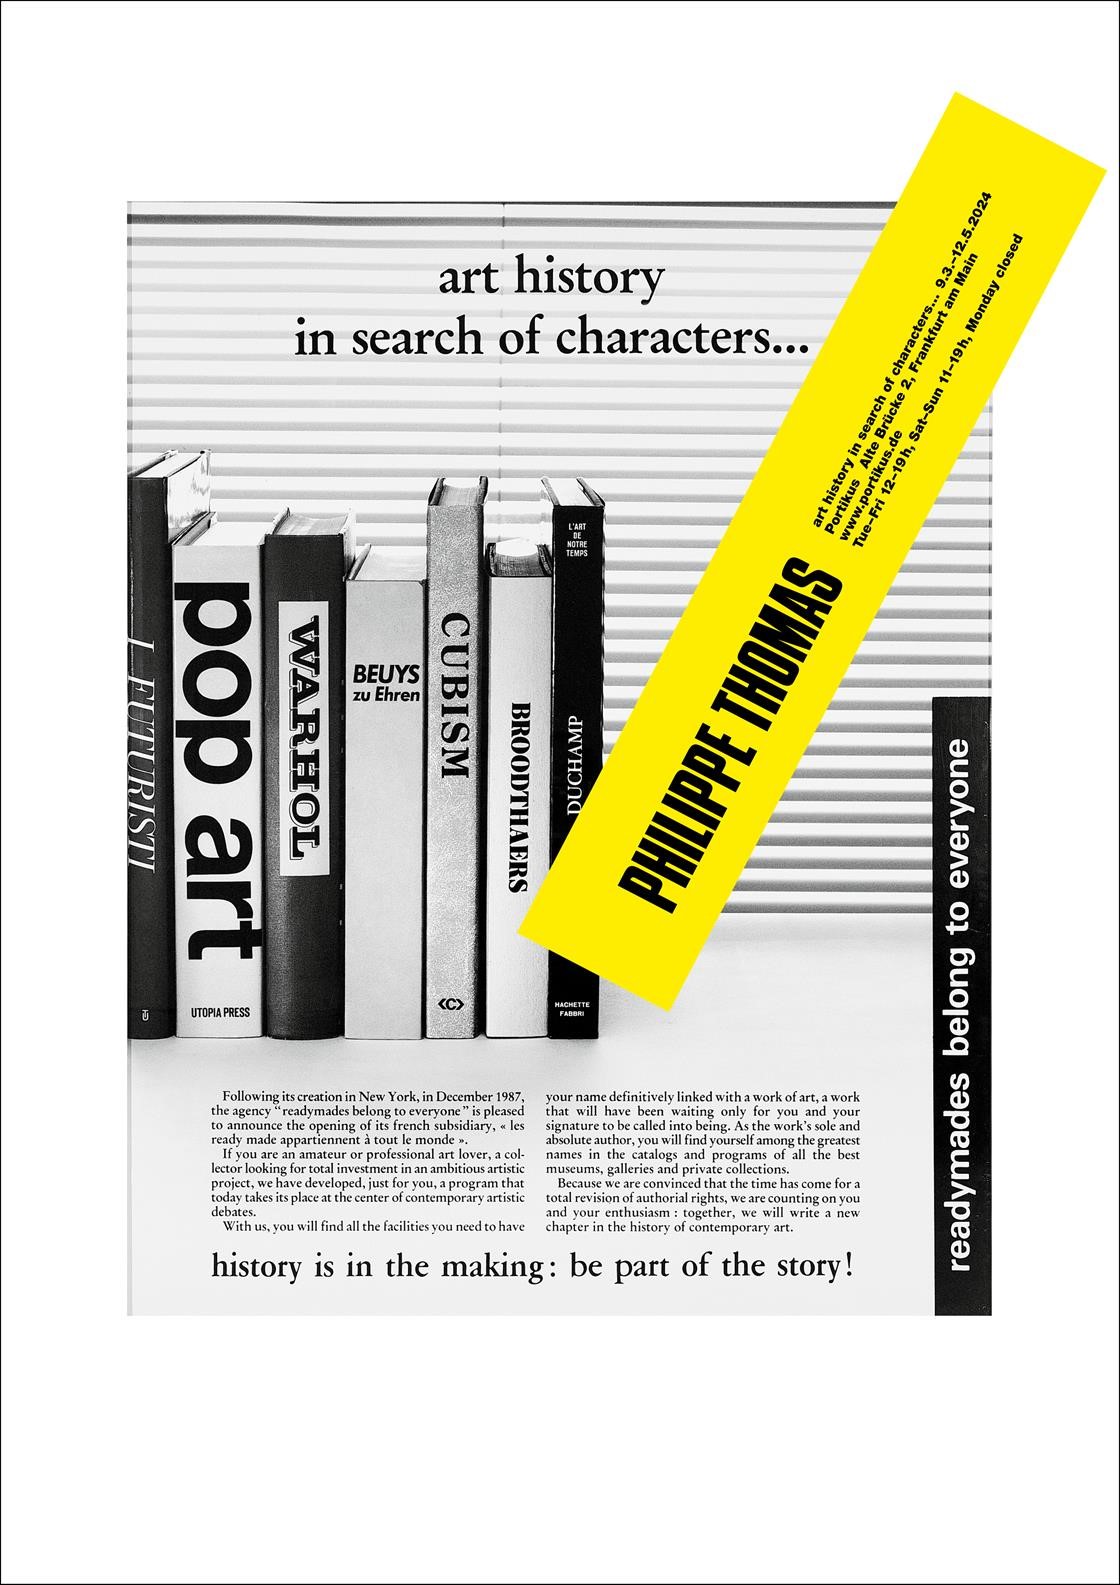 Bild vergrössern: Plakat mit Titel, Ausstellungsdaten und Text vor einem schwarz-weißem Bild mit Büchern über Kunst